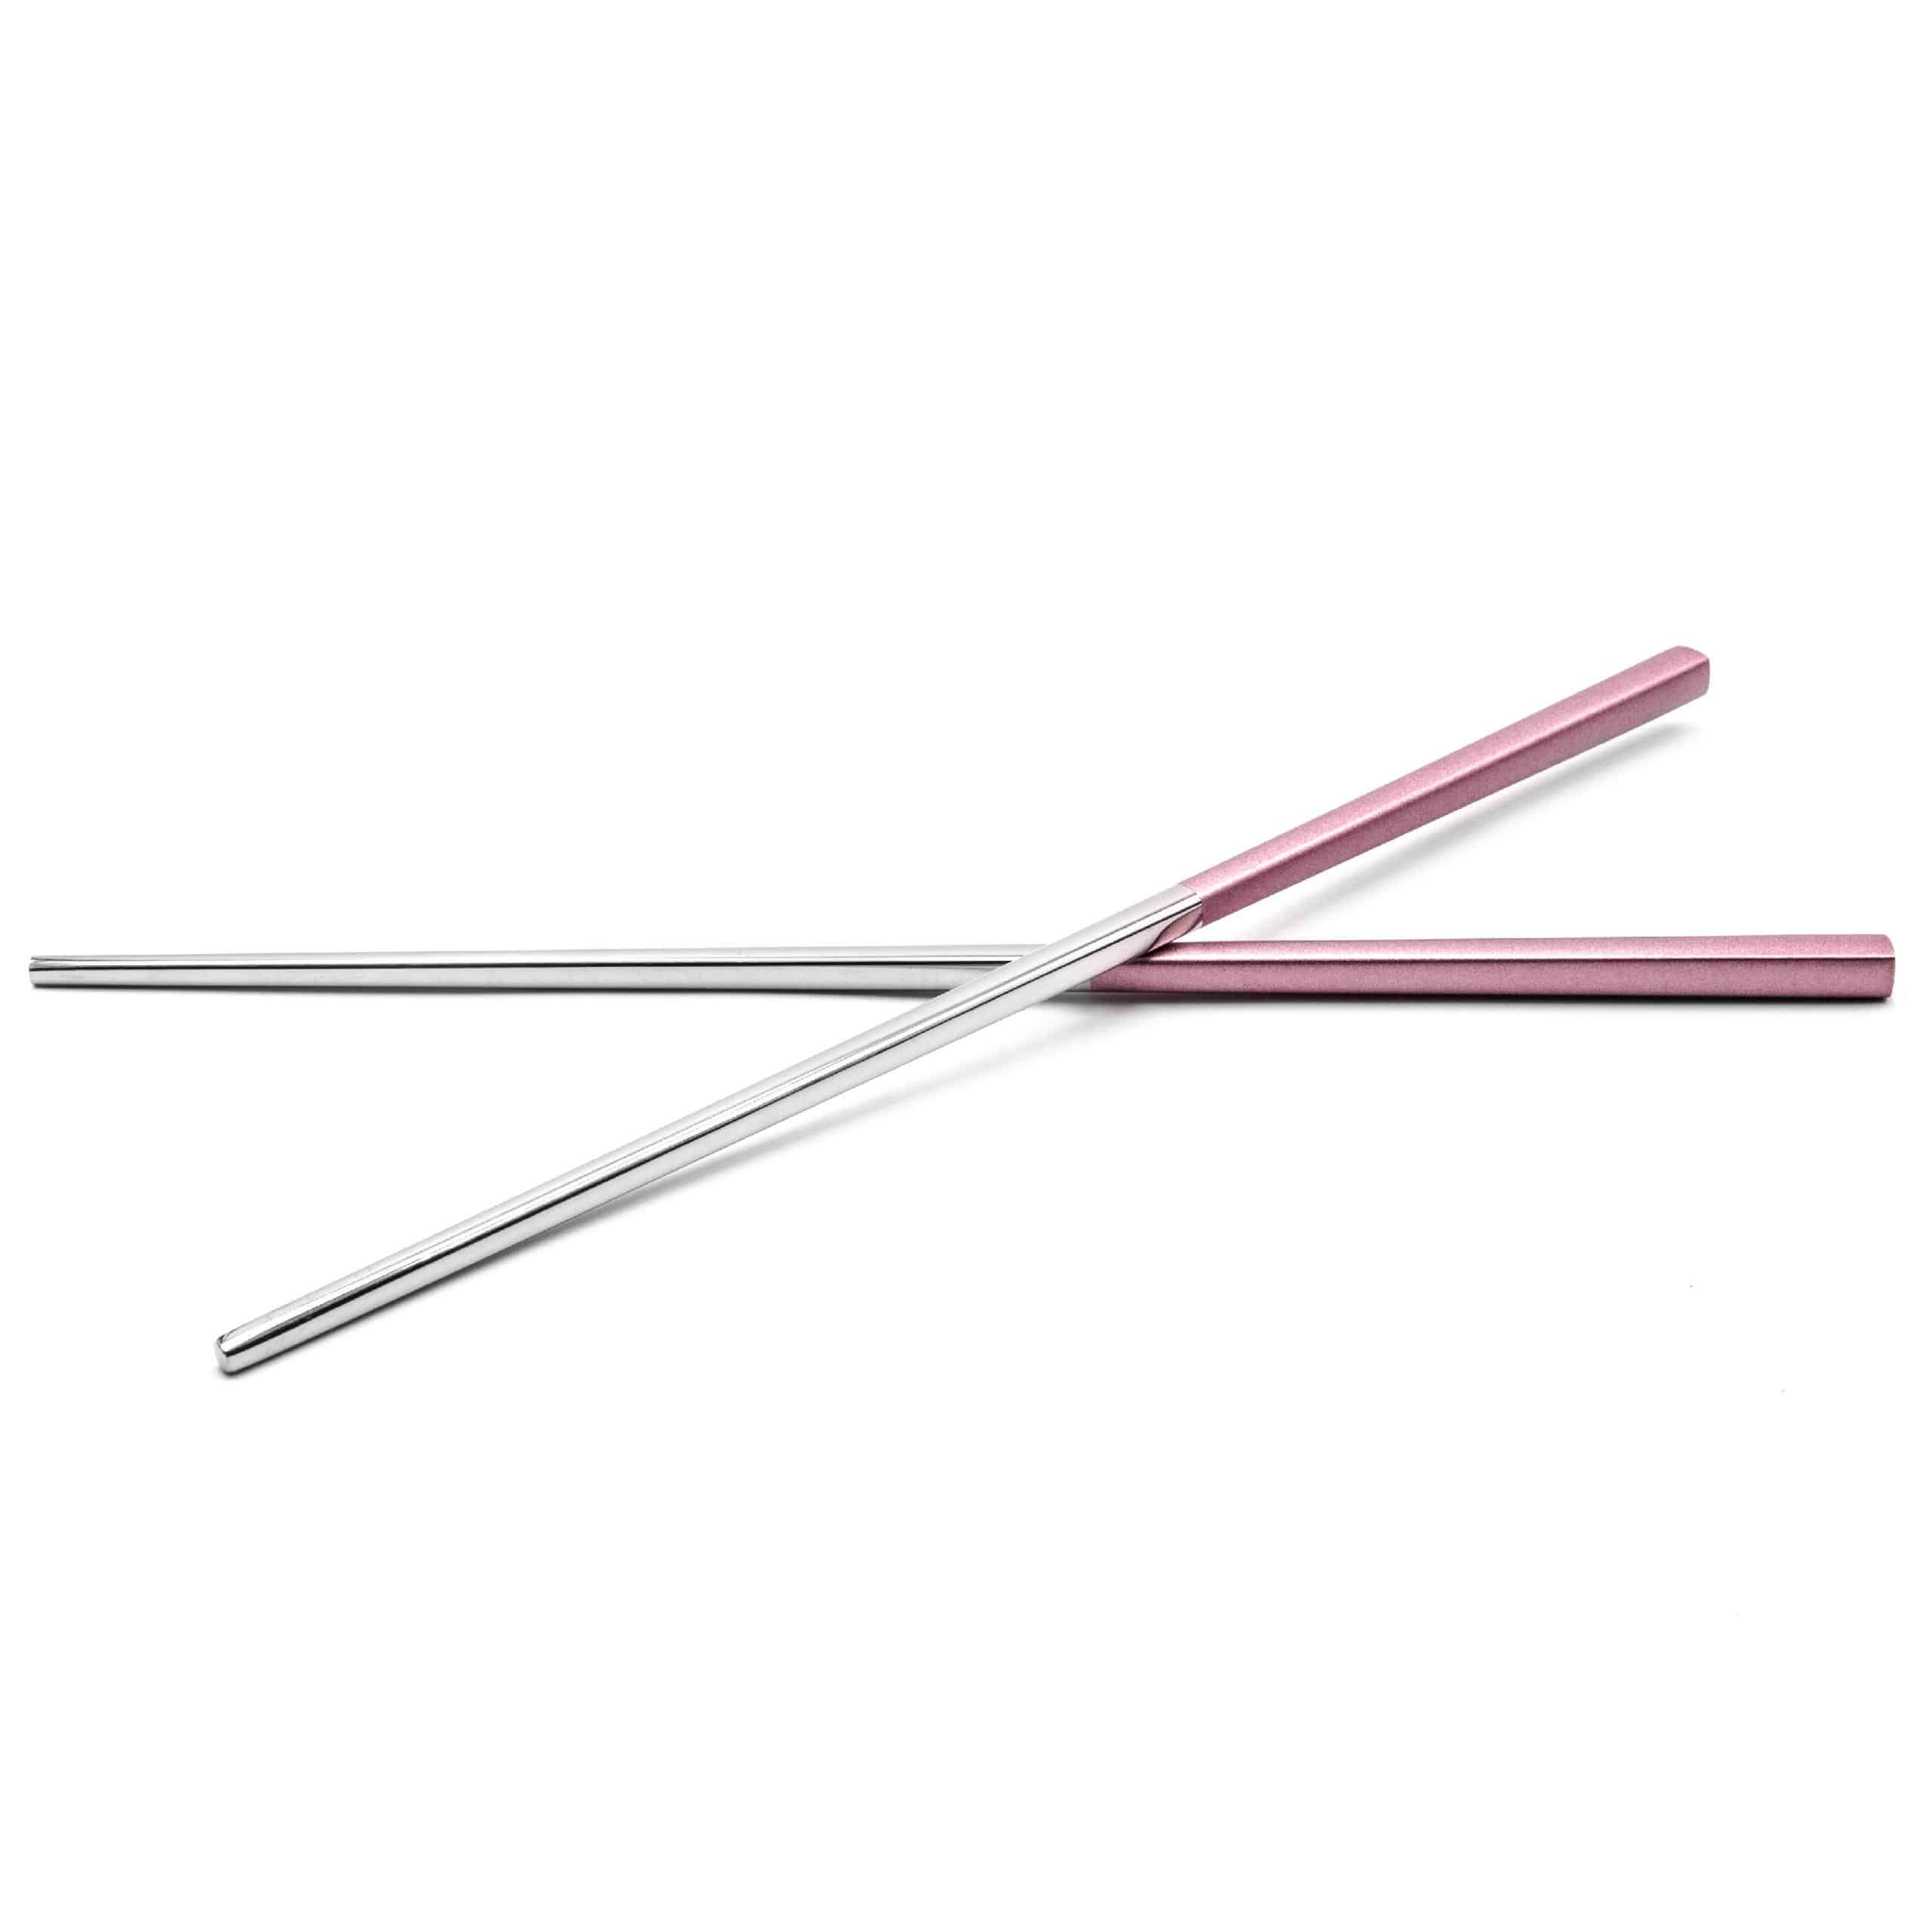 Essstäbchen-Set (1 Paar) - Edelstahl, rosa, silber, 23 cm lang, Wiederwendbar